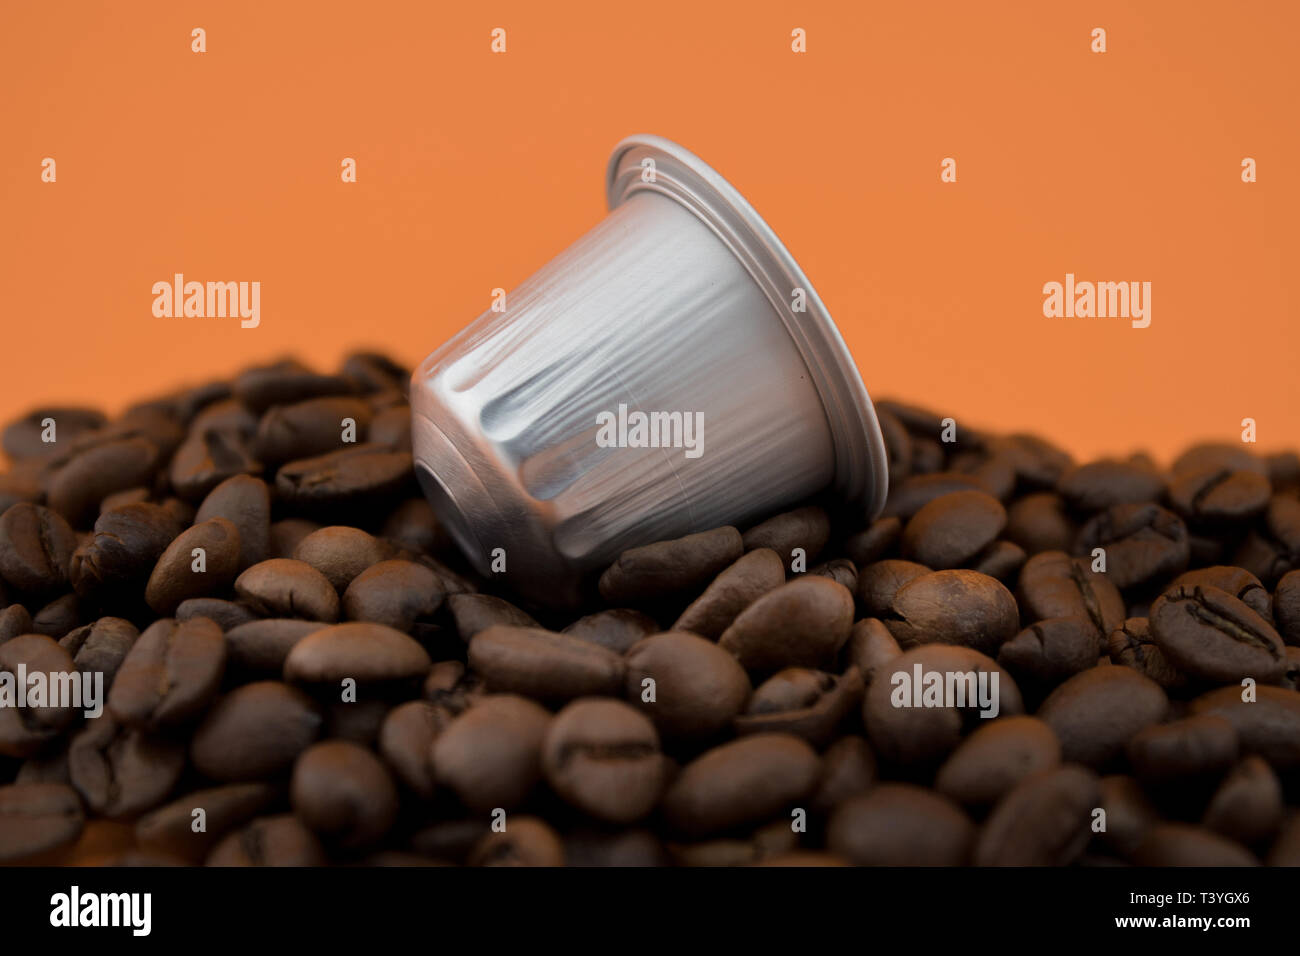 Espresso Kapsel oder kaffeepad auf Kaffeebohnen, orange hinterlegt. Kapseln für die Kaffeemaschine. Stockfoto